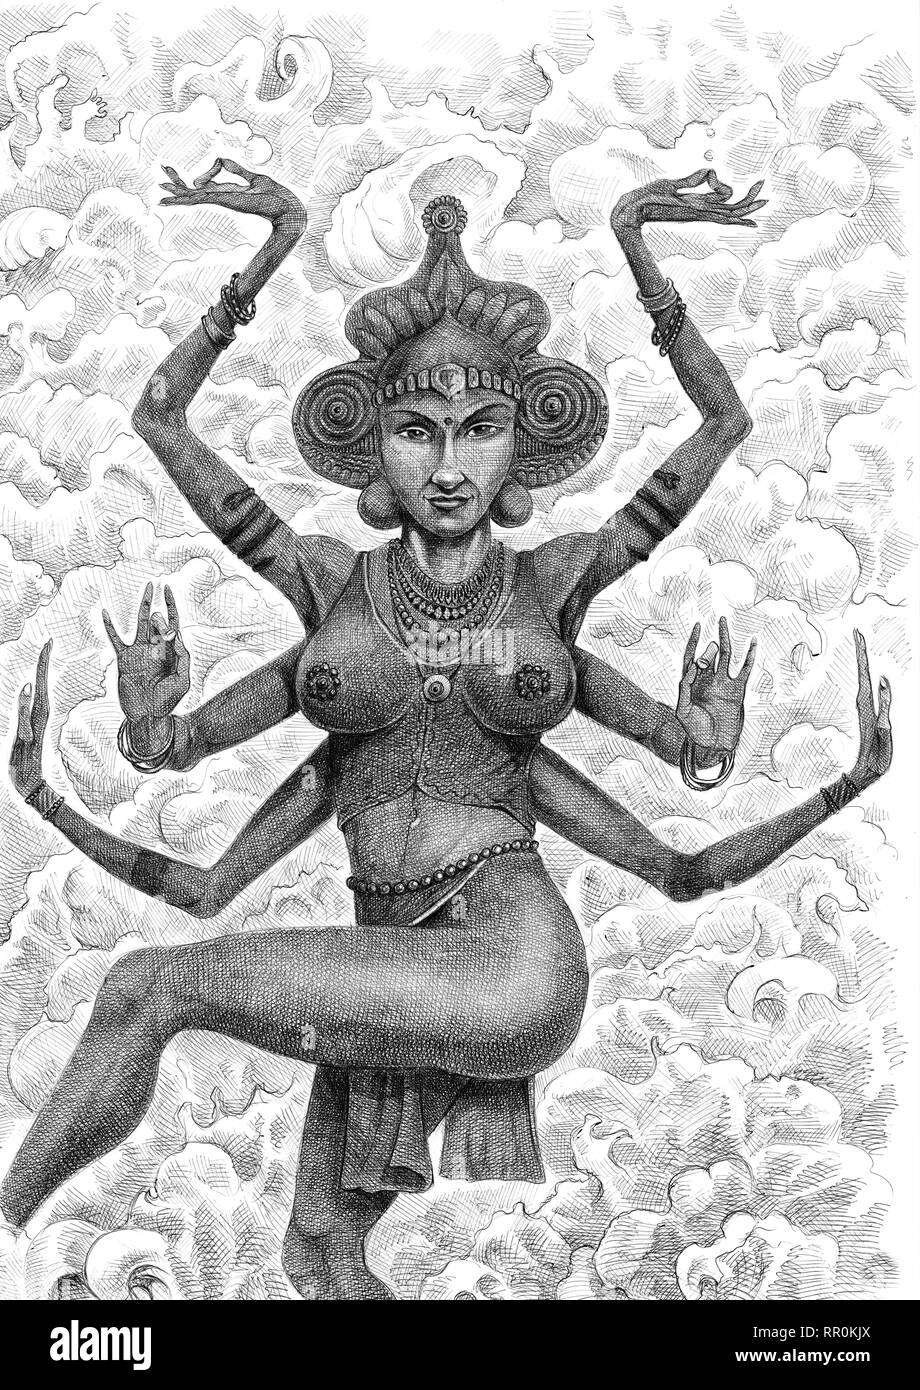 Déesse hindoue illustration. Sarasvati et Kali dessin. Banque D'Images